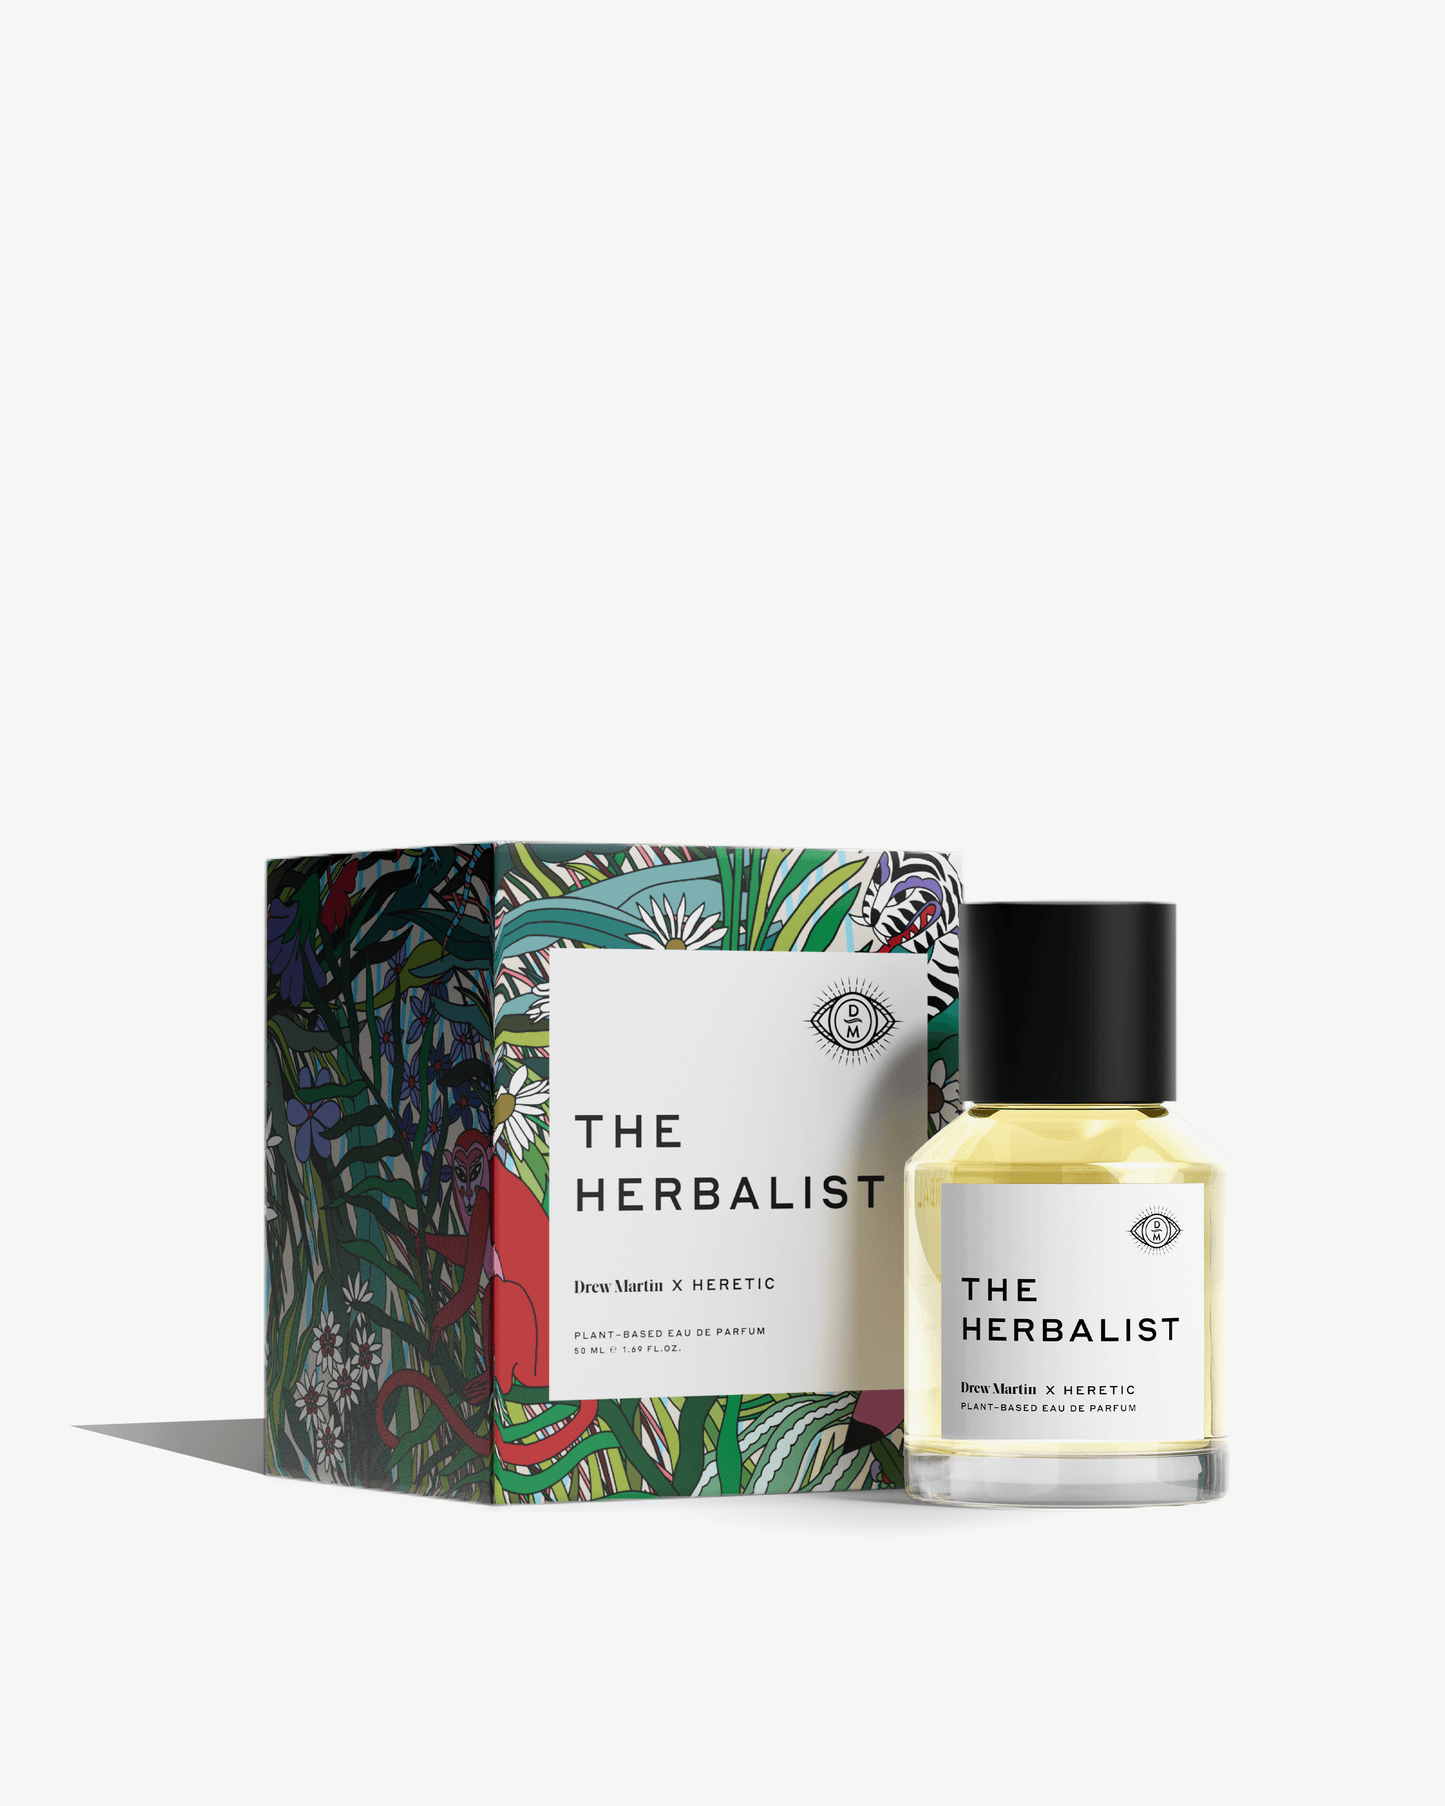 The Herbalist Perfume